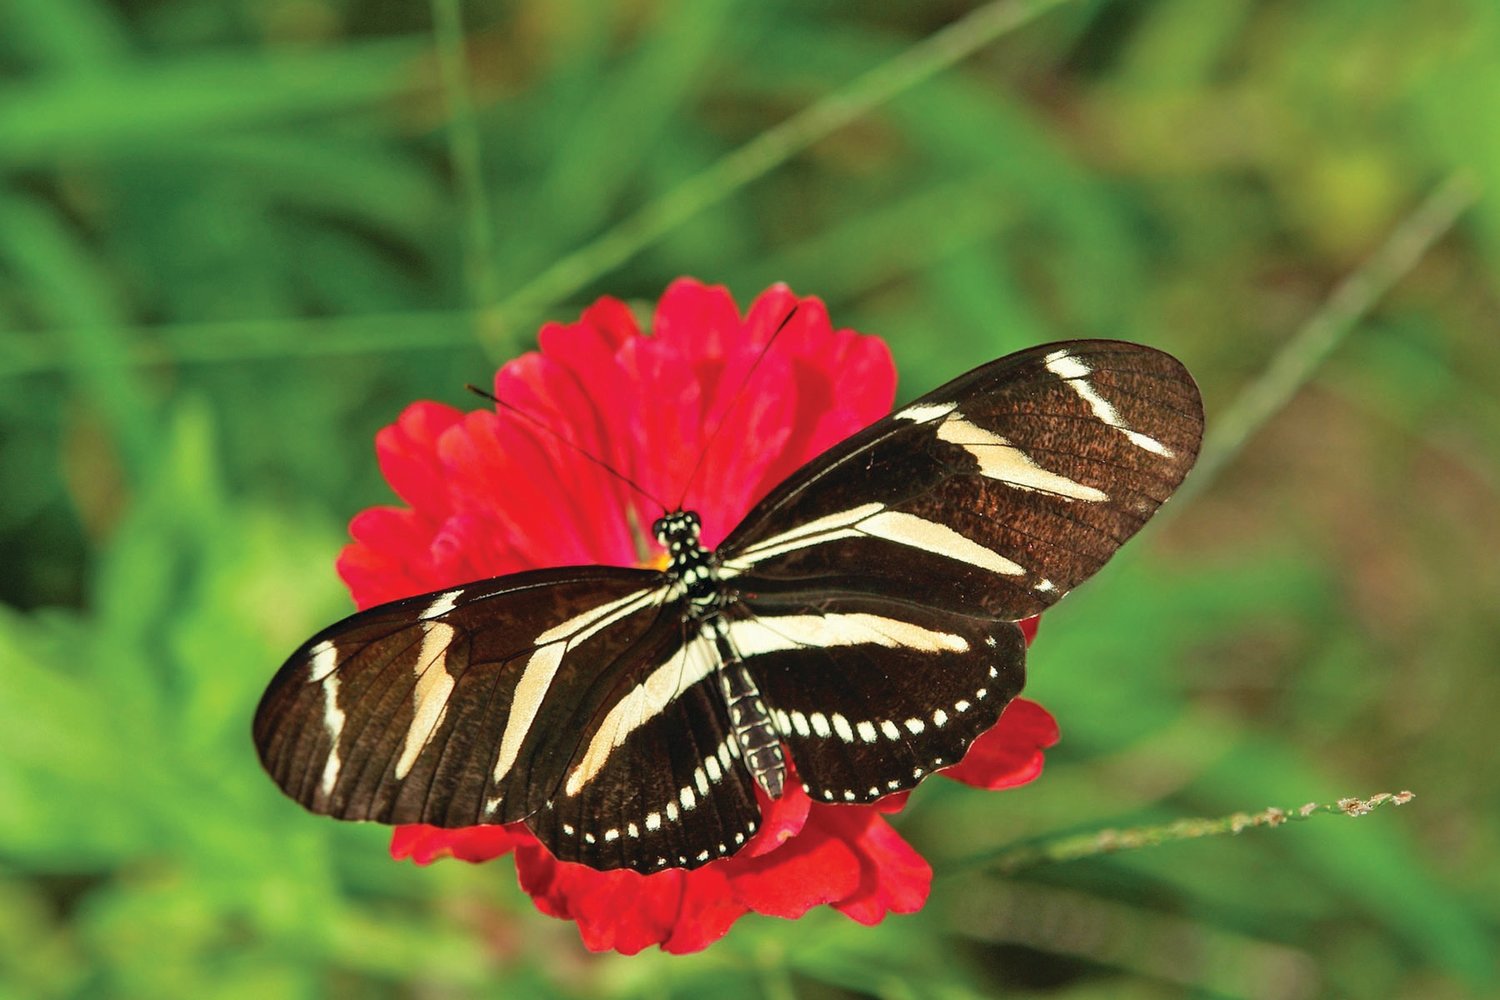 A zebra longwing butterfly.